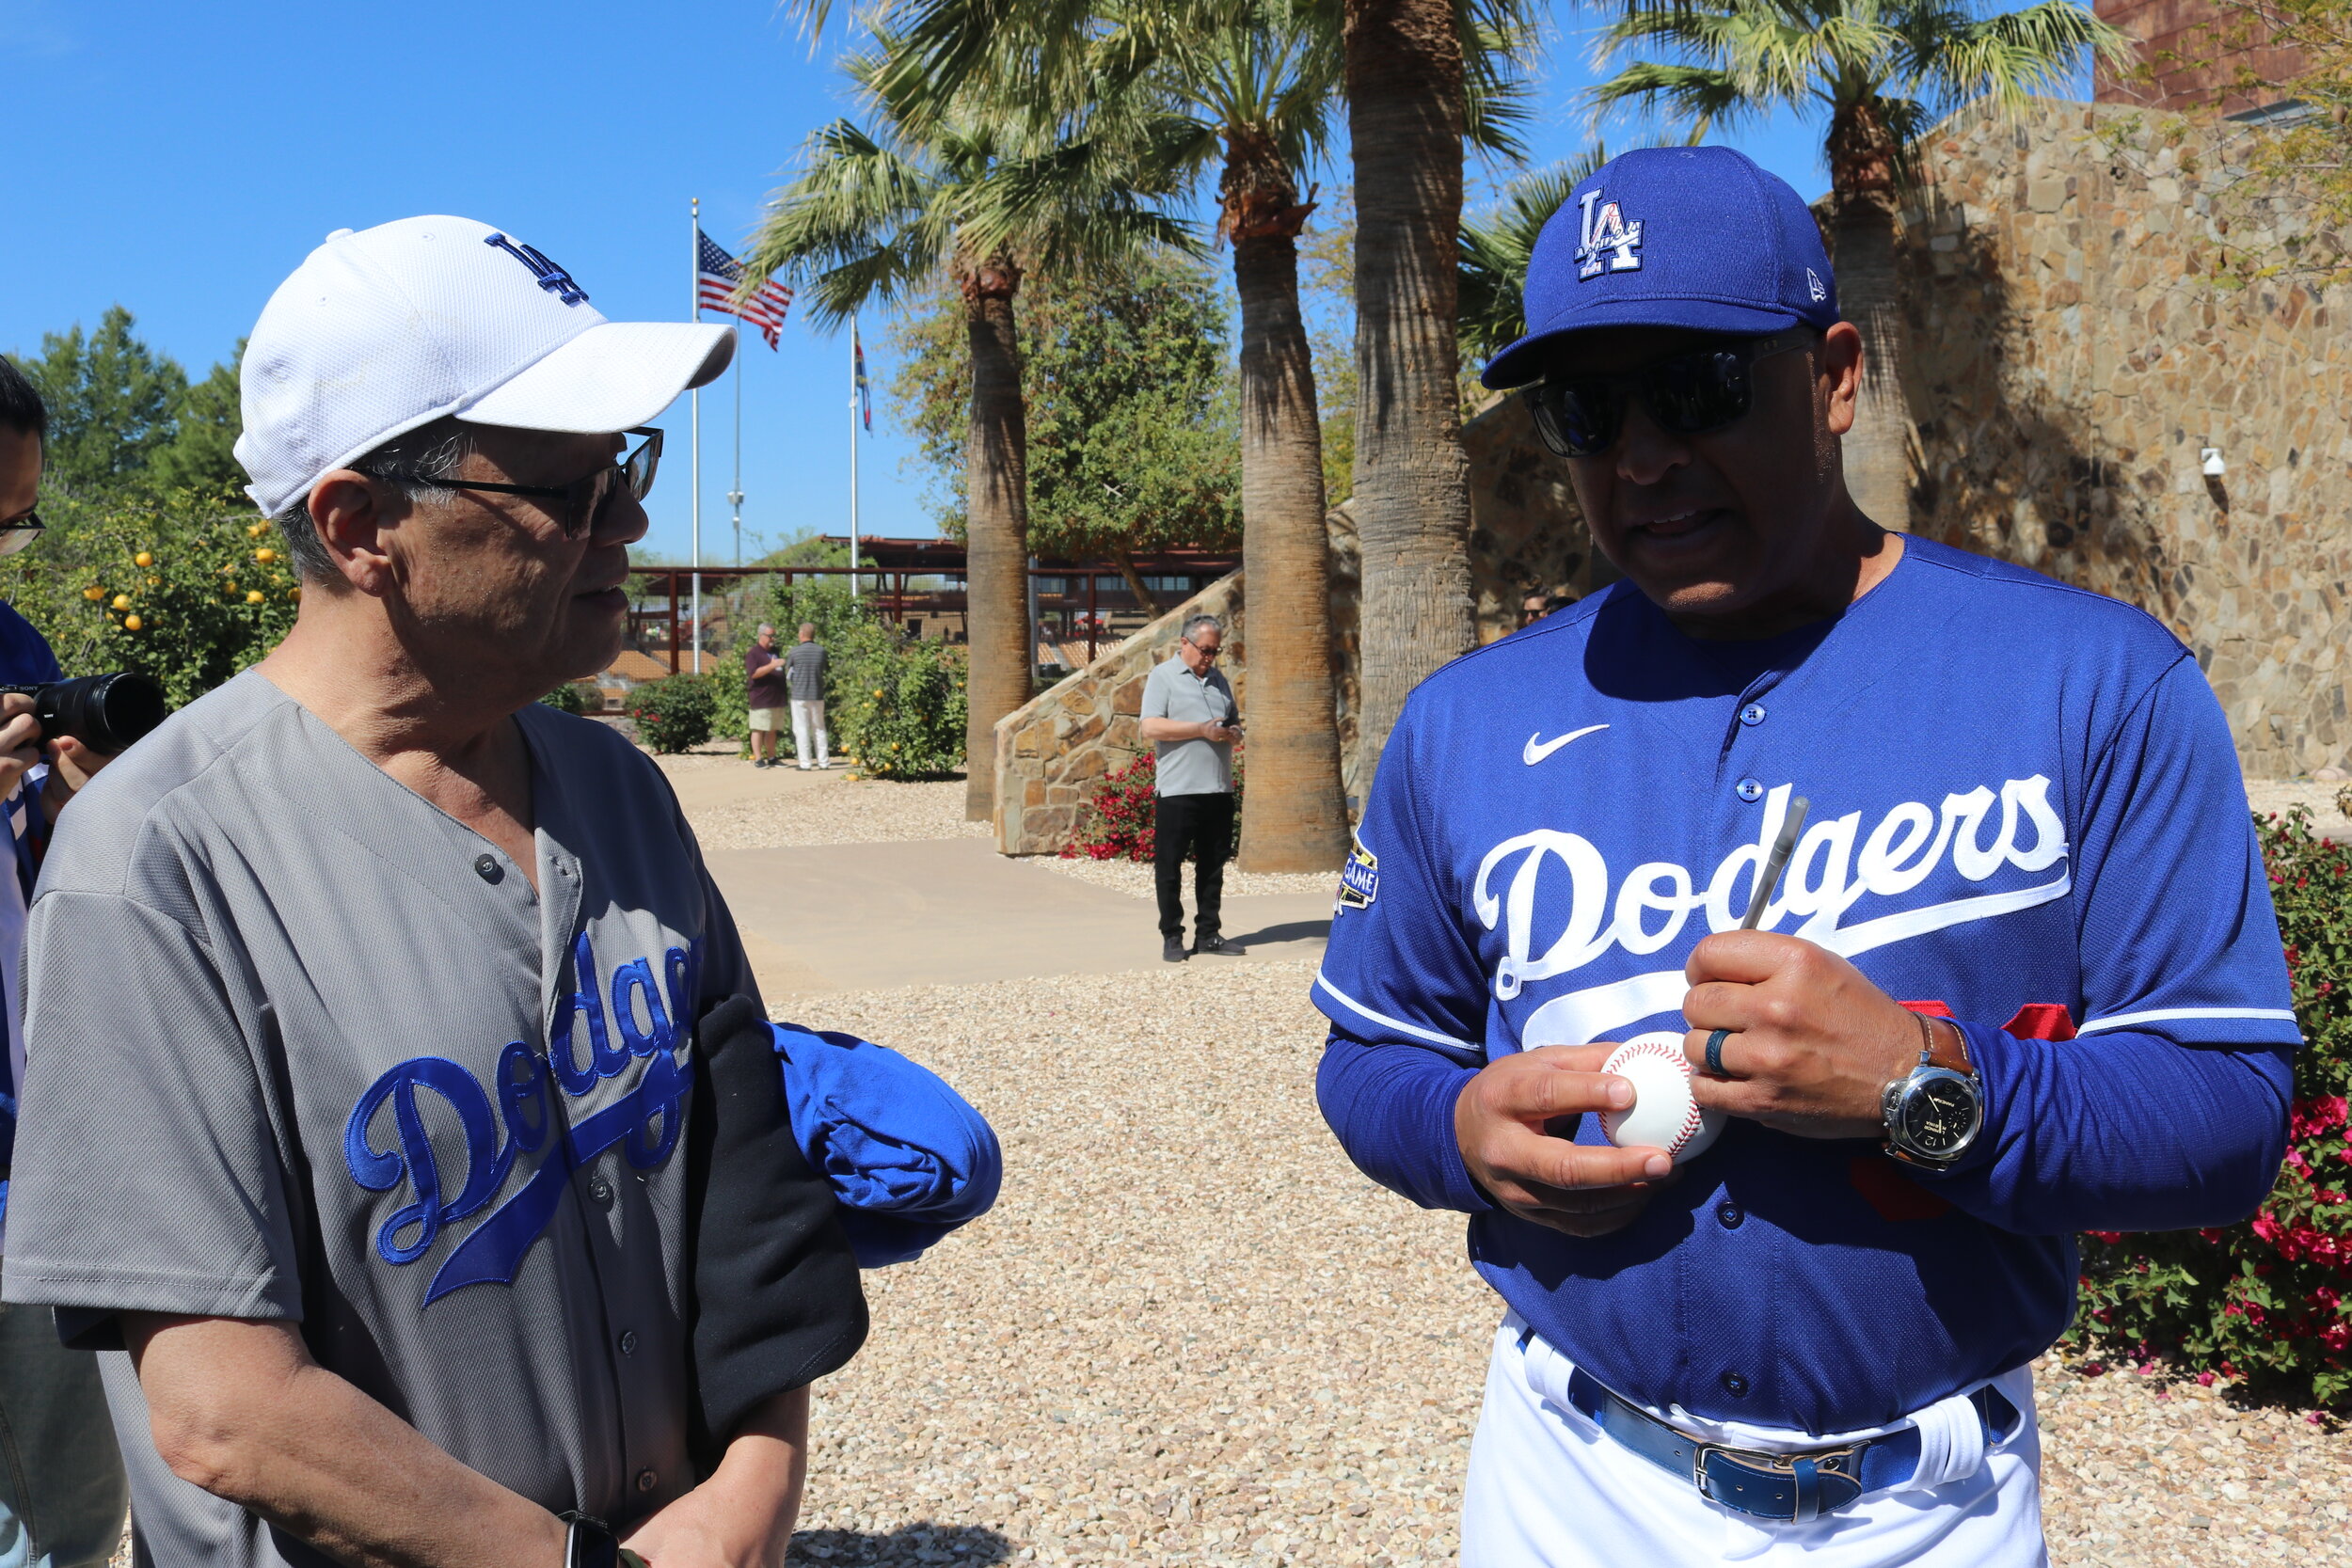 A man wearing a Dodgers jersey signs a ball for an older gentleman. 